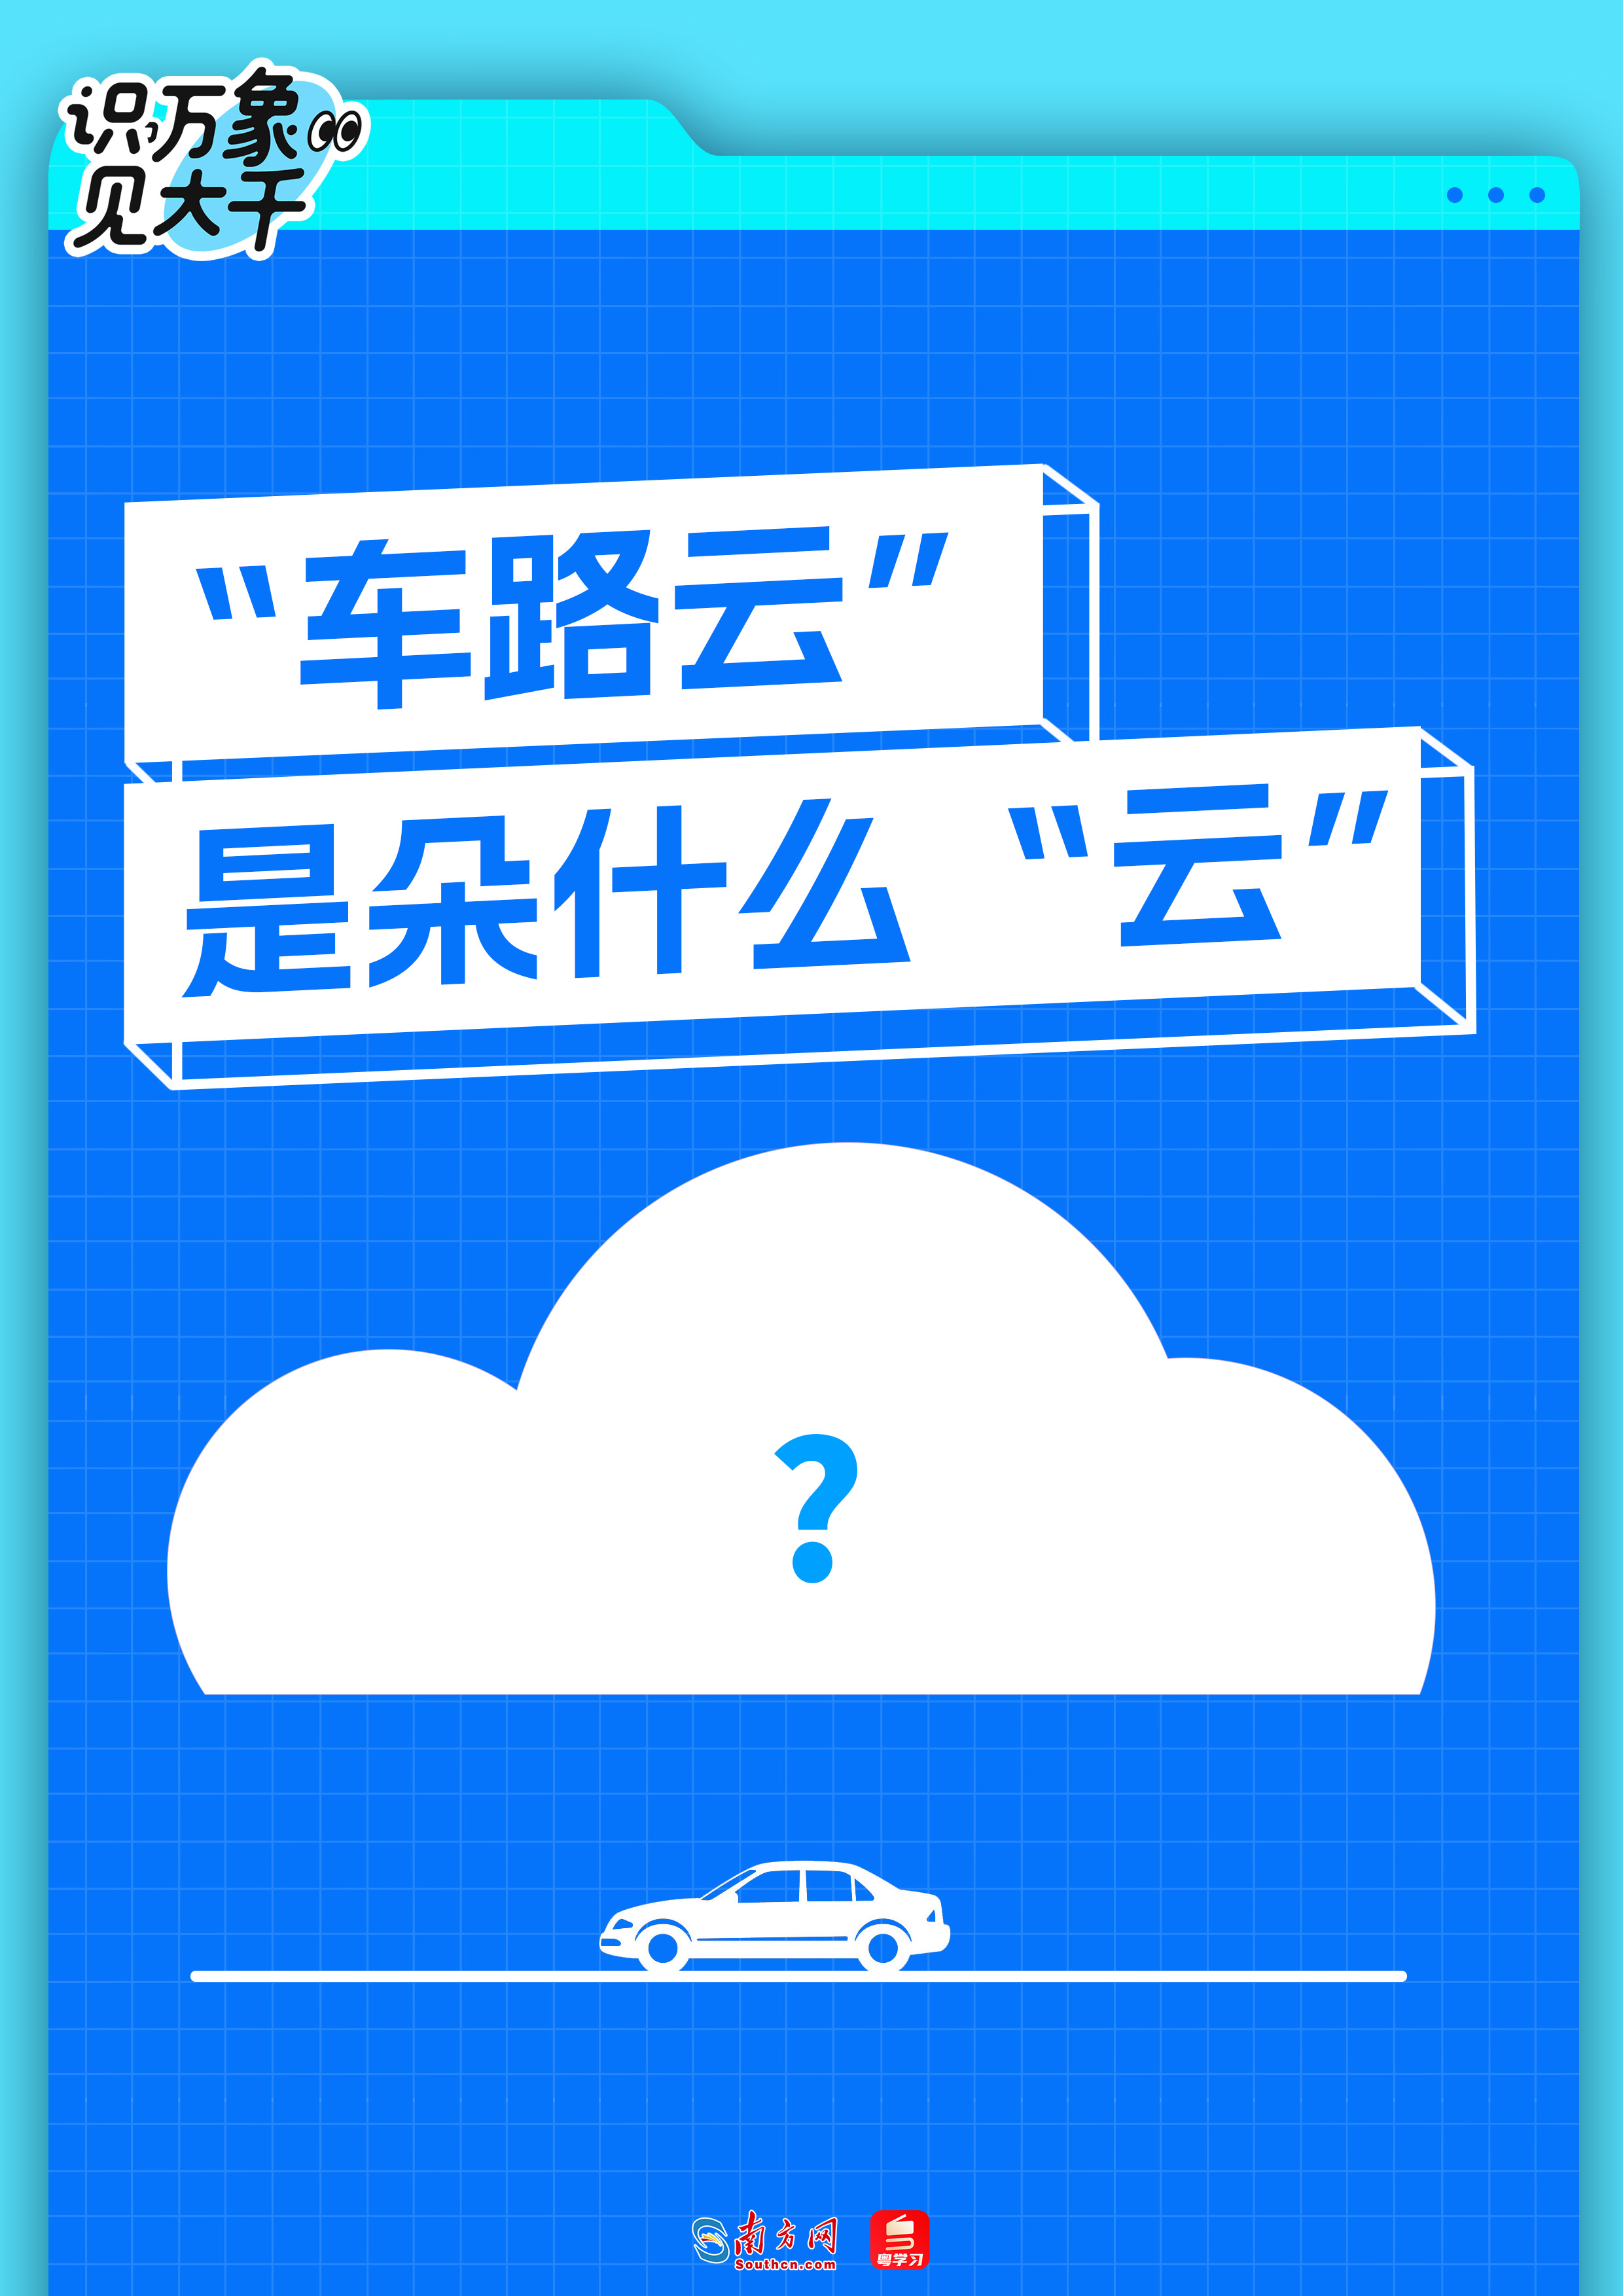 识见丨让“聪明车”跑上“智慧路”！“车路云”是朵什么“云”？